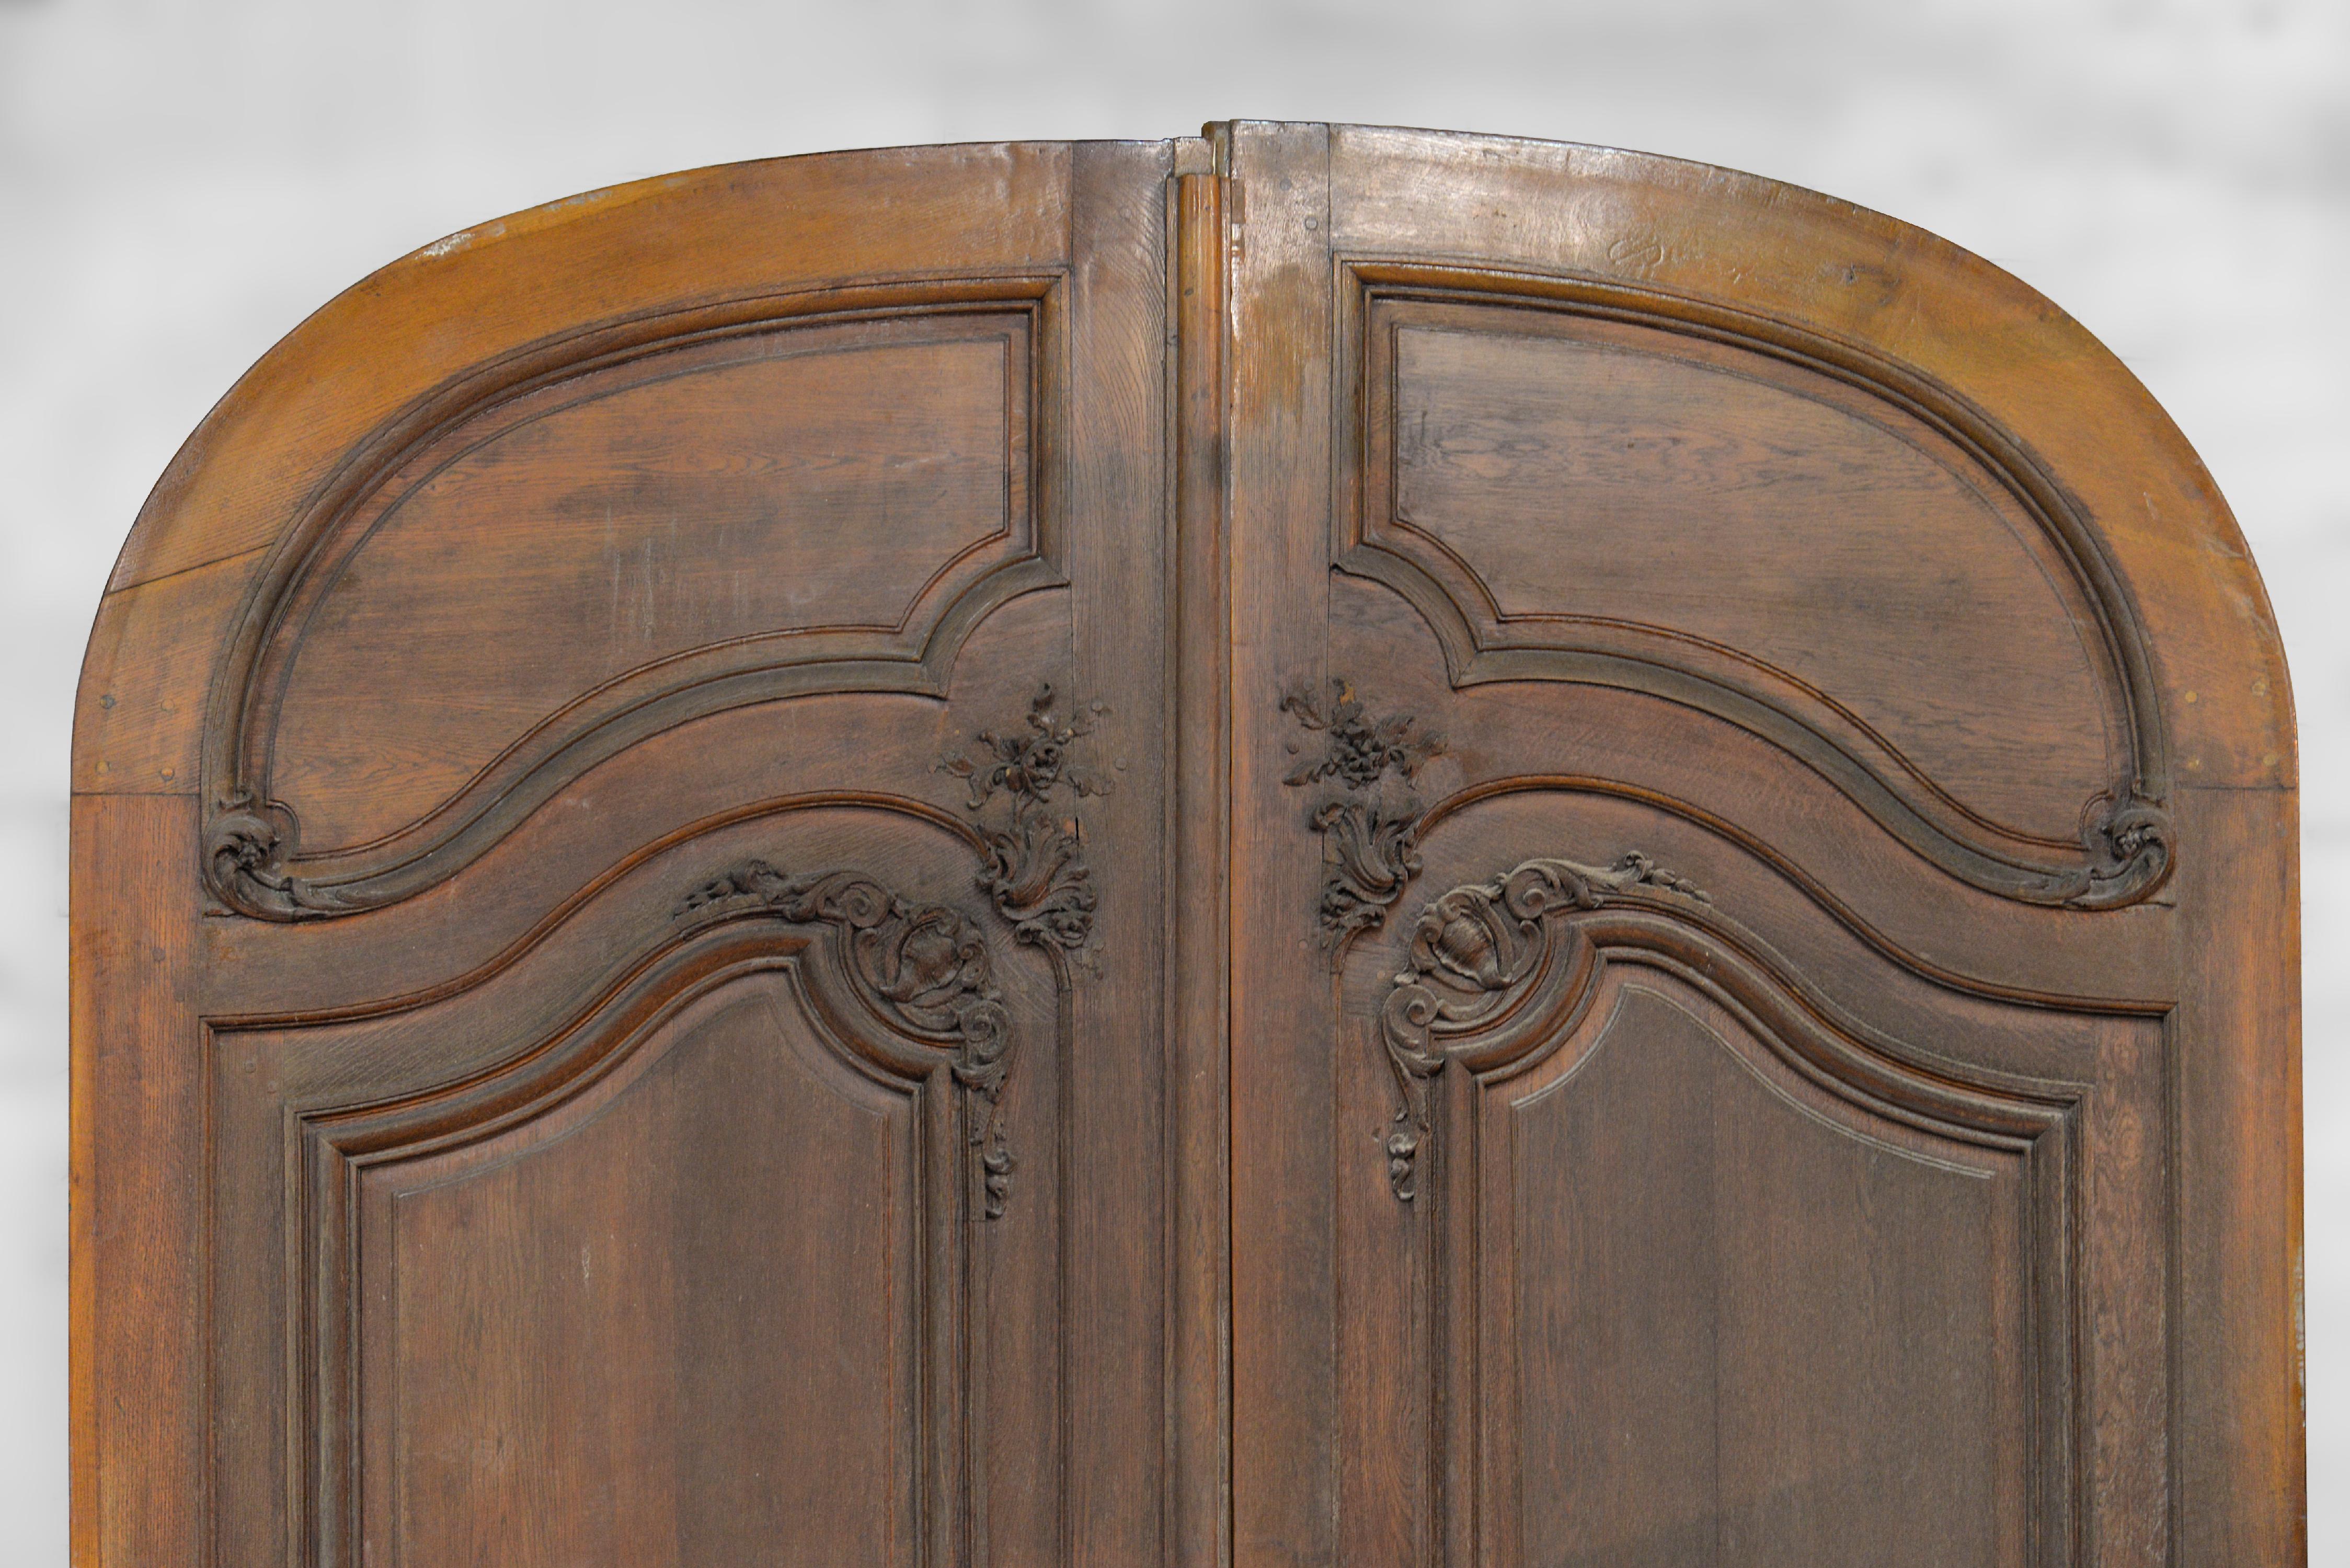 Ces hautes portes cochères en chêne ont été fabriquées à la fin du XIXe siècle et appartenaient à un immeuble haussmannien typique de Paris. En très bon état, les détails ont été soigneusement exécutés. De fines moulures ponctuent discrètement la